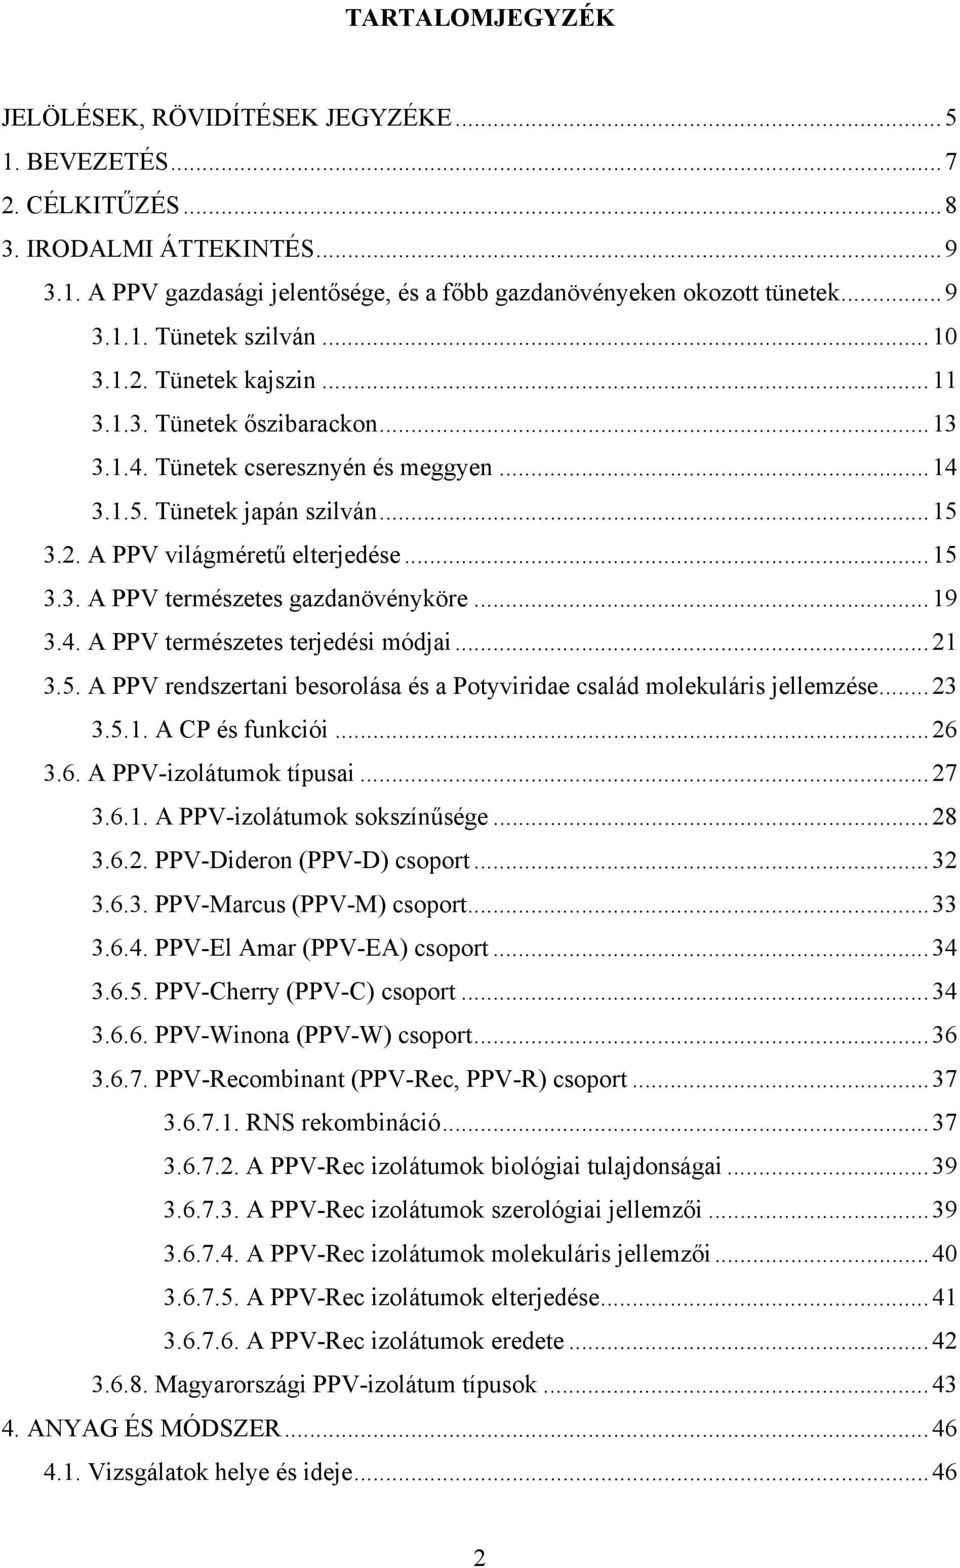 ..19 3.4. A PPV természetes terjedési módjai...21 3.5. A PPV rendszertani besorolása és a Potyviridae család molekuláris jellemzése...23 3.5.1. A CP és funkciói...26 3.6. A PPV-izolátumok típusai.